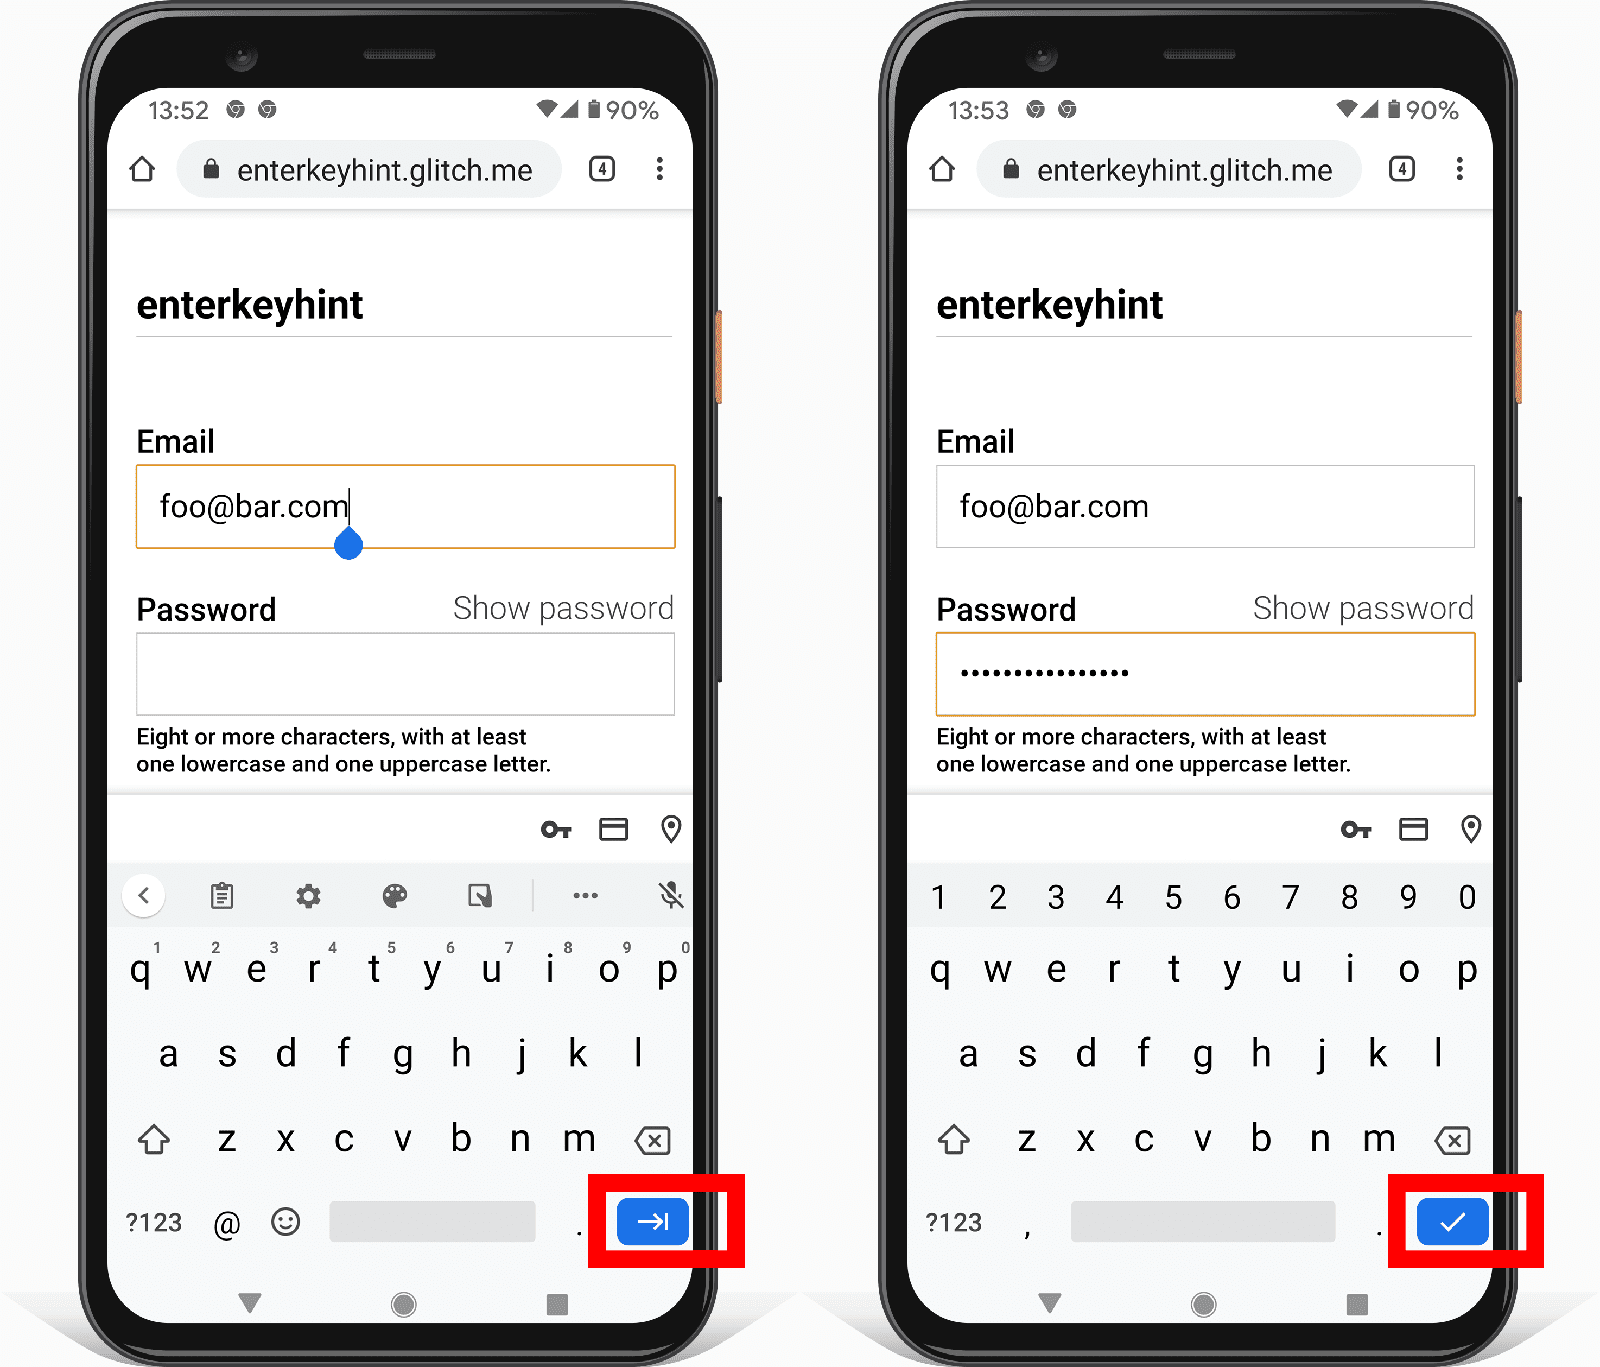 שני צילומי מסך של טופס ב-Android שמראים איך מאפיין הקלט Enterkeyhint משנה את הסמל של לחצן Enter.